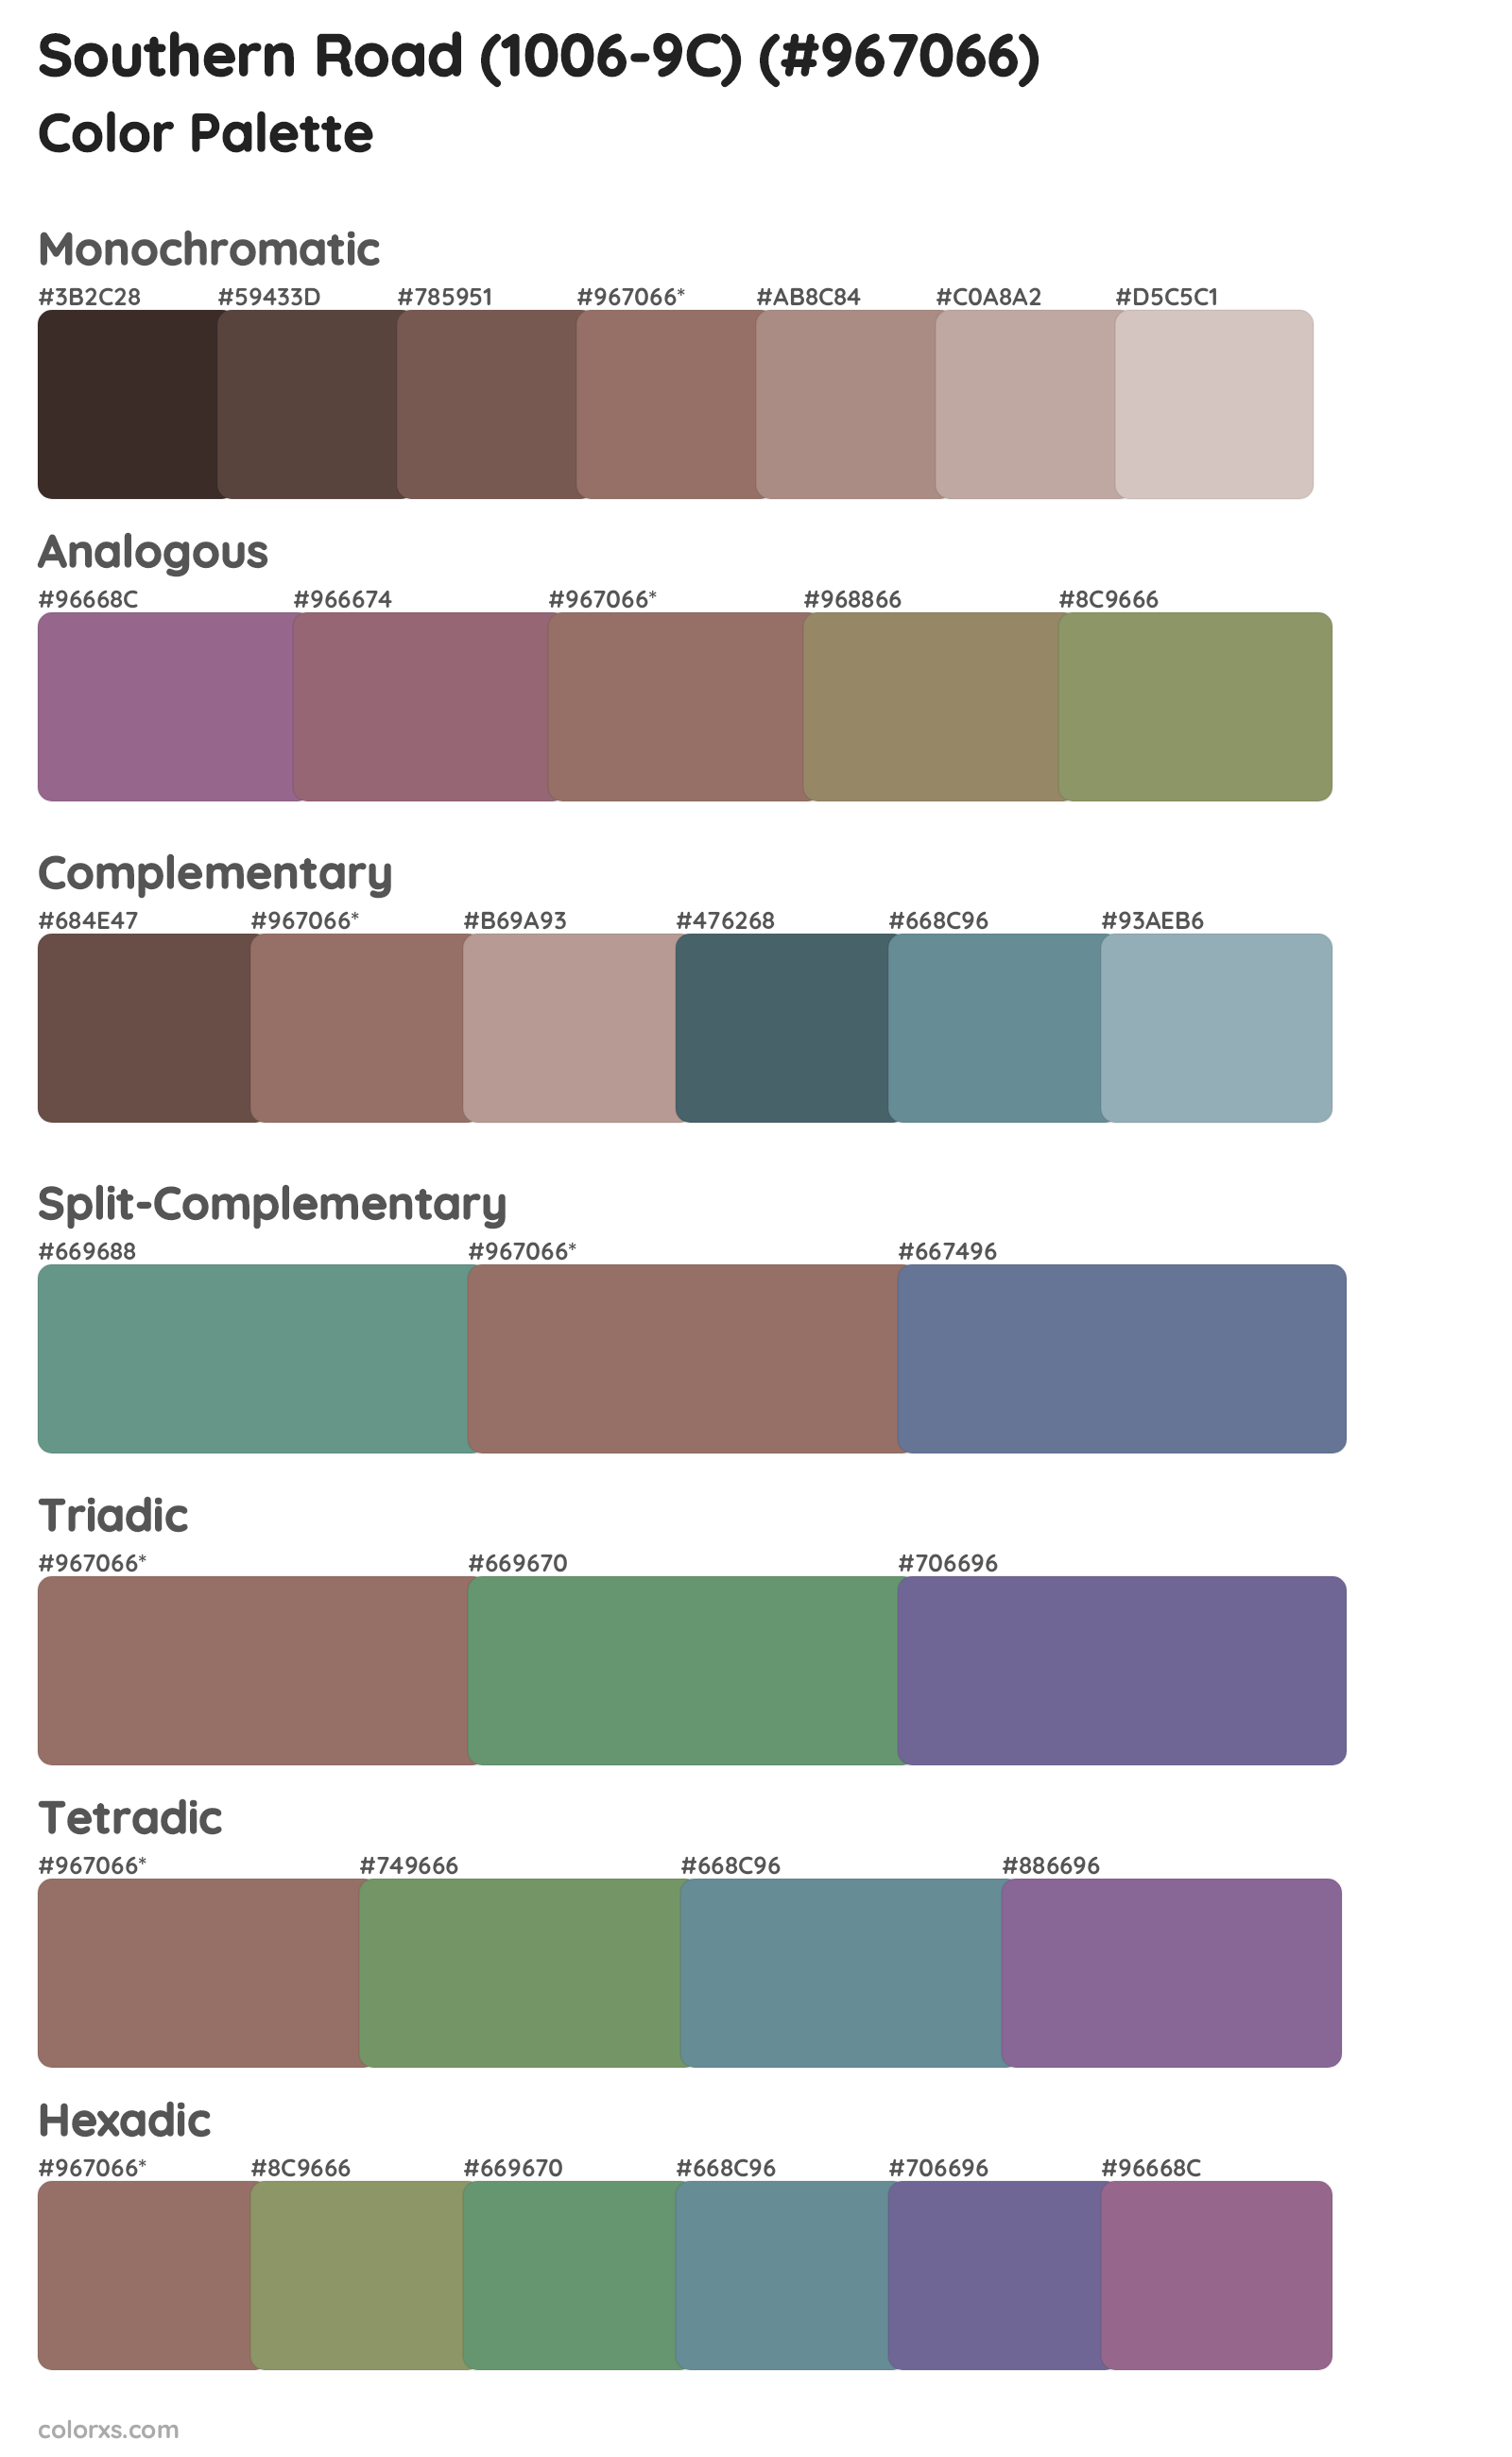 Southern Road (1006-9C) Color Scheme Palettes